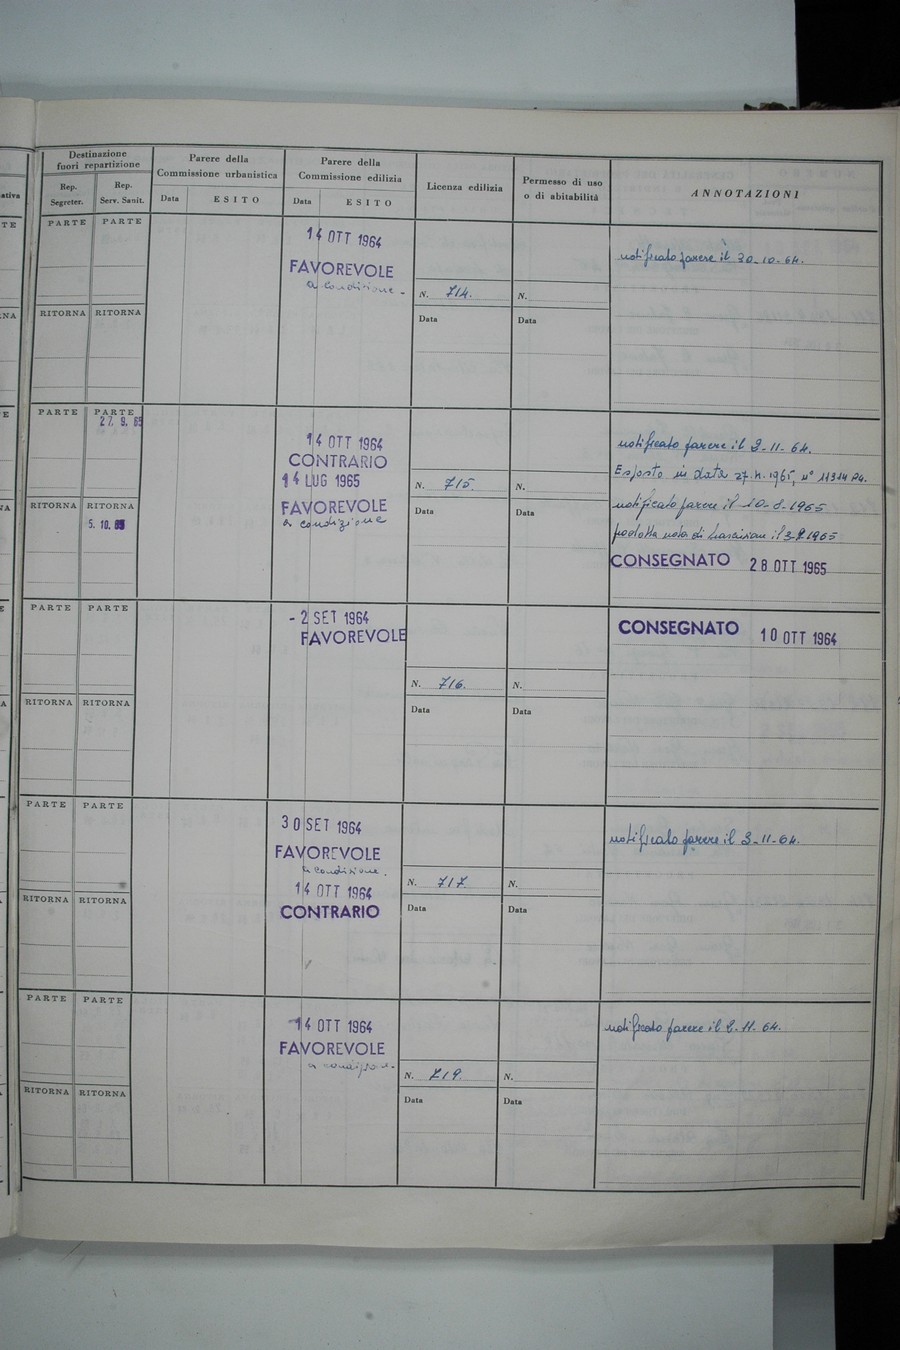 Foto del lato destro del registro con i dati della pratica 707/1964